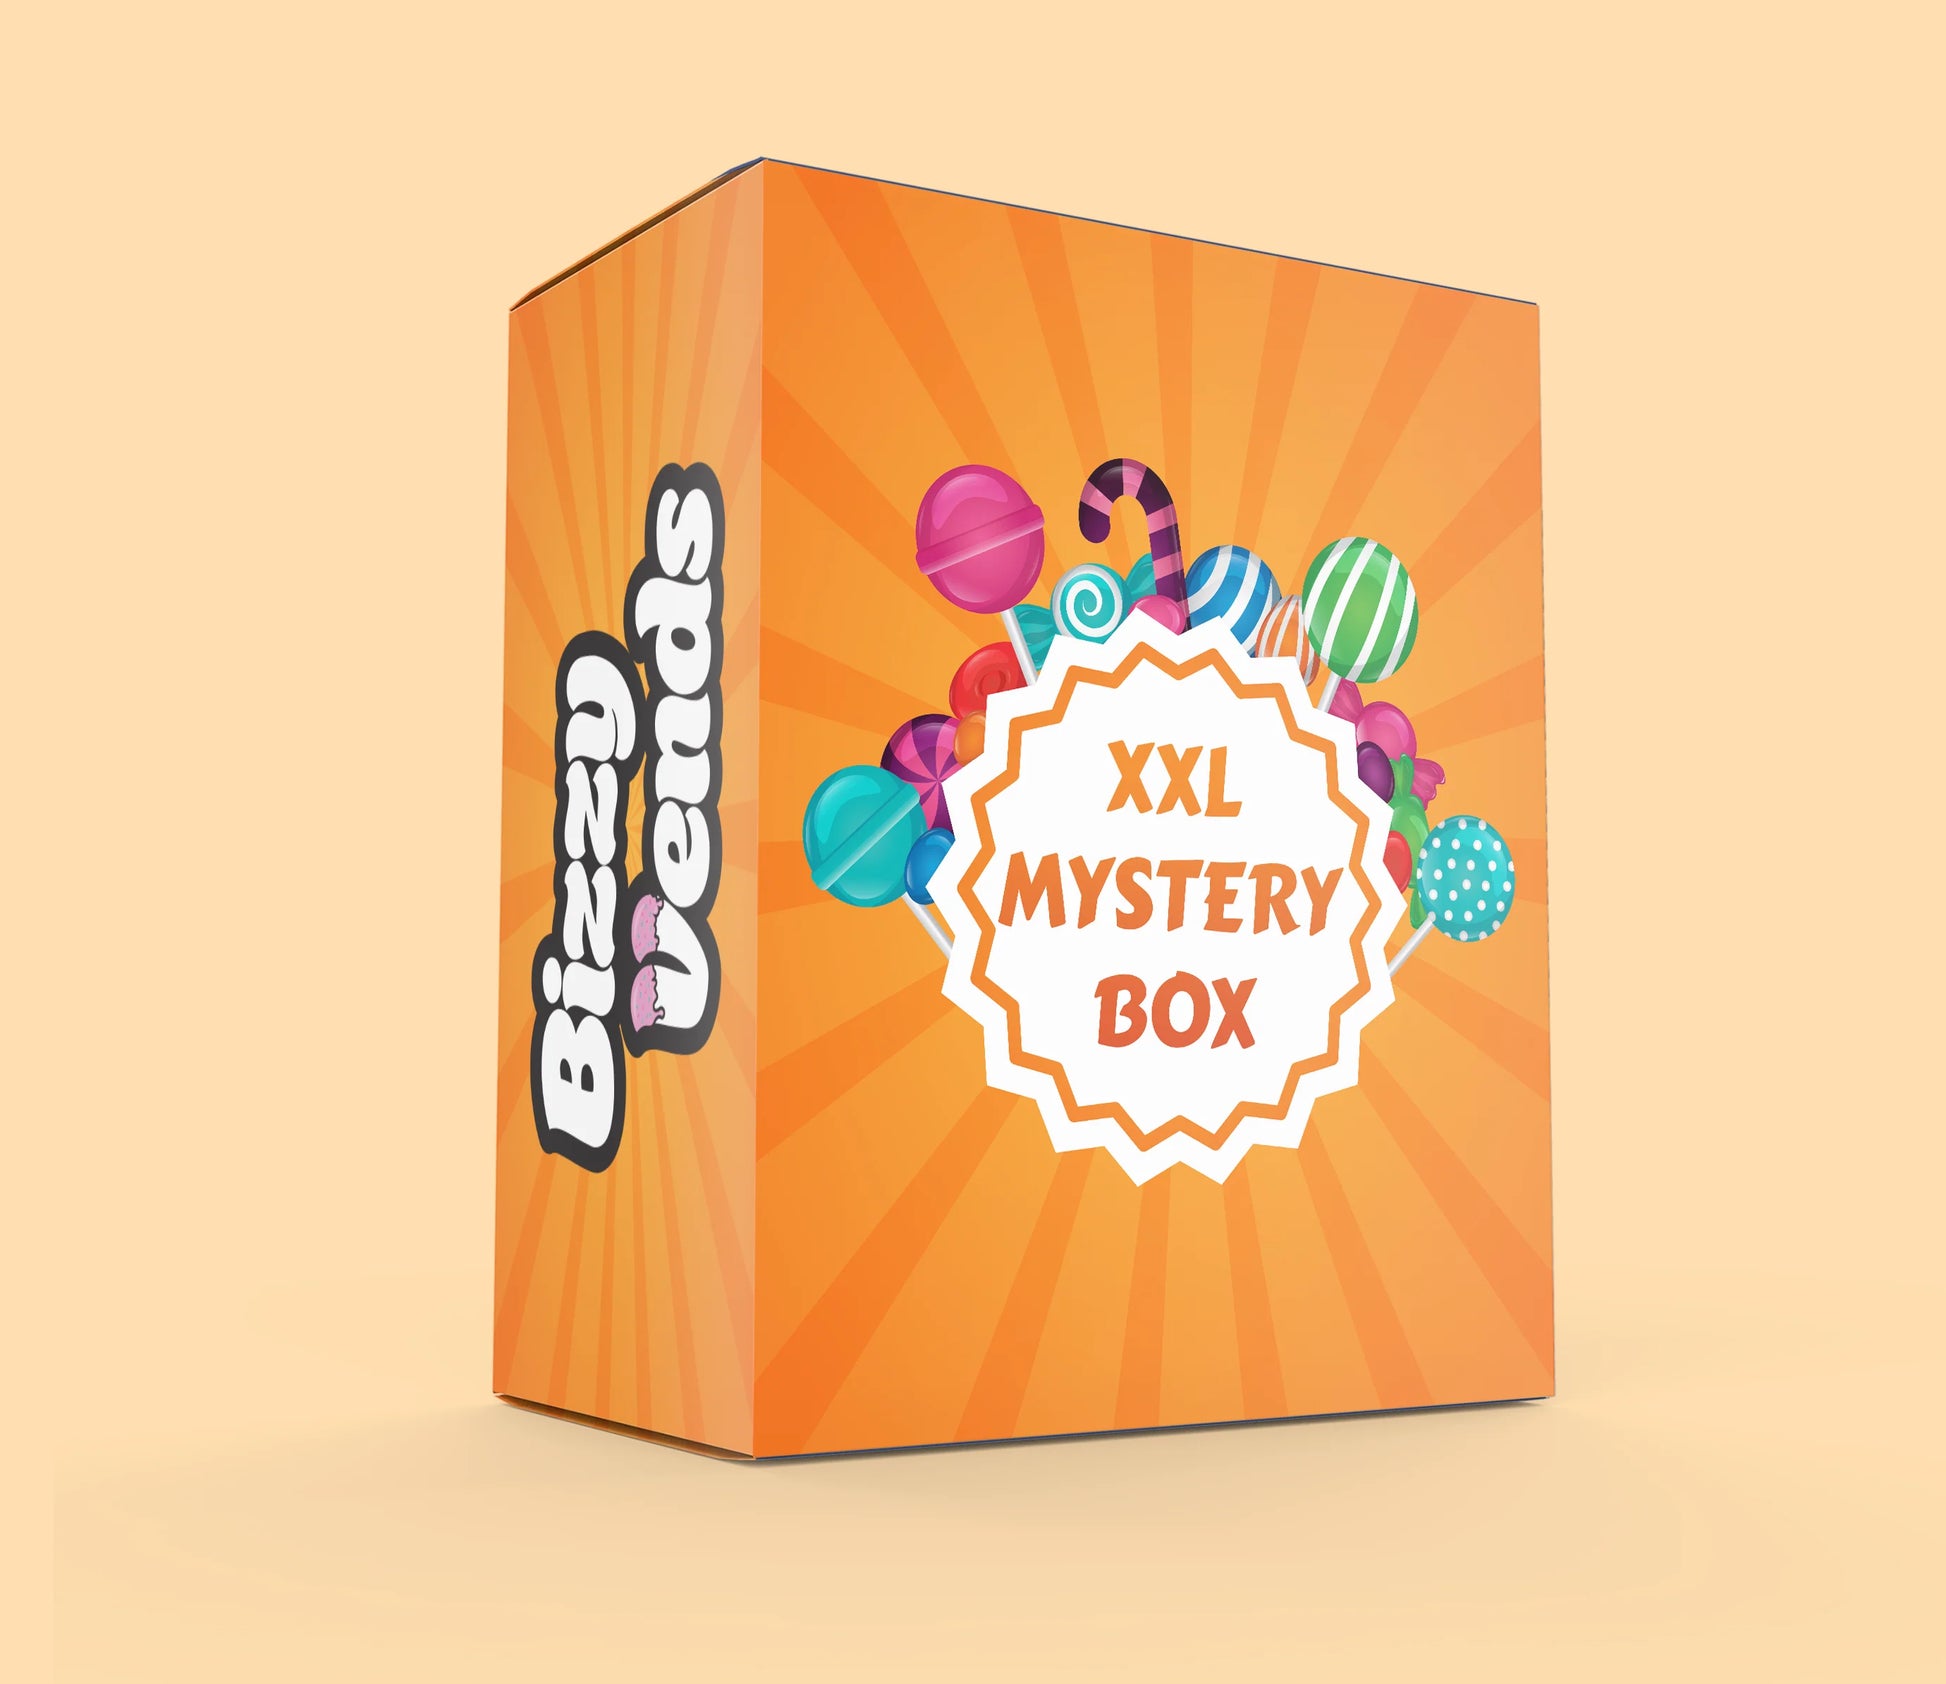 XXL Mystery Box - Bizzyvends